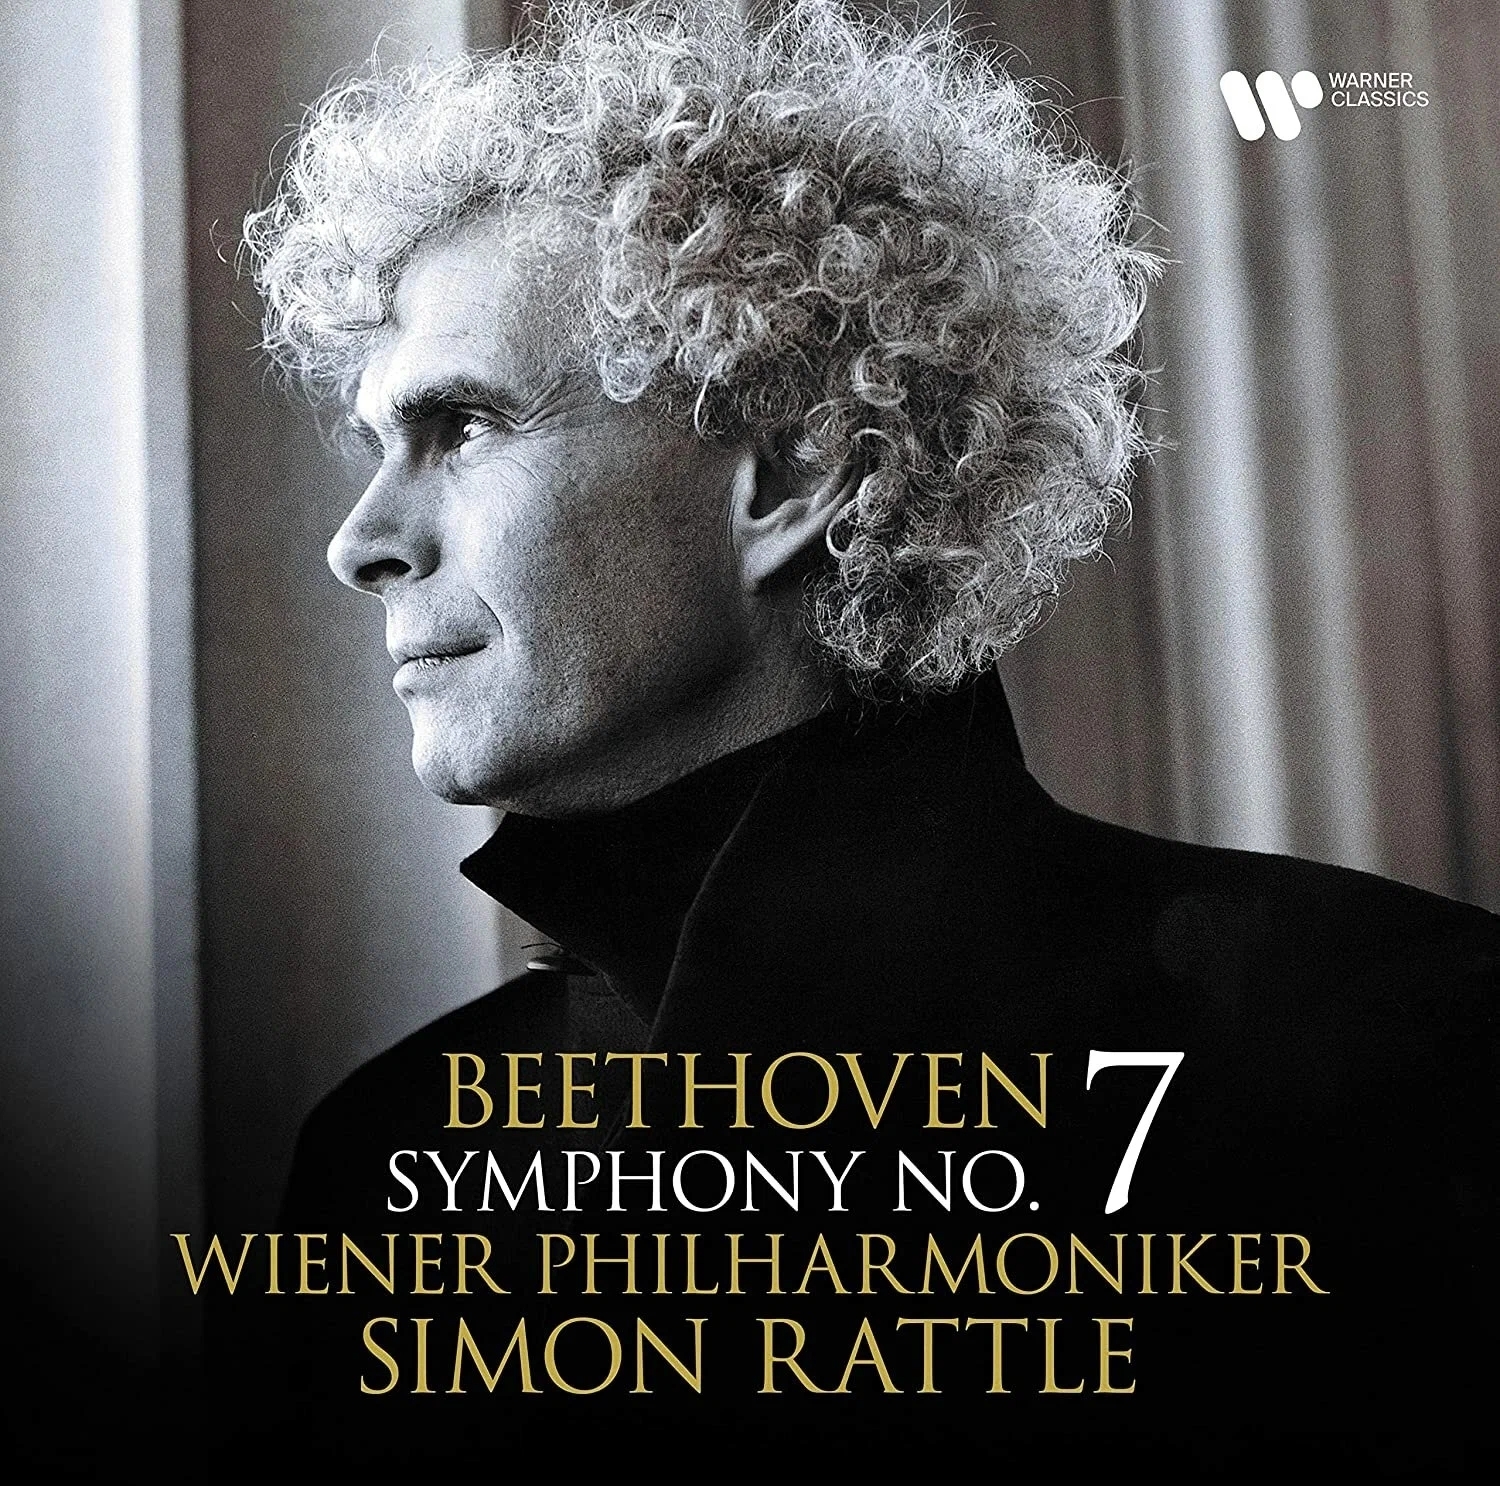 Виниловая Пластинка Rattle, Simon / Wiener Philharmoniker, Beethoven: Symphony No. 7 (5054197376481) компакт диски bis vanska osmo symphony no 13 cd